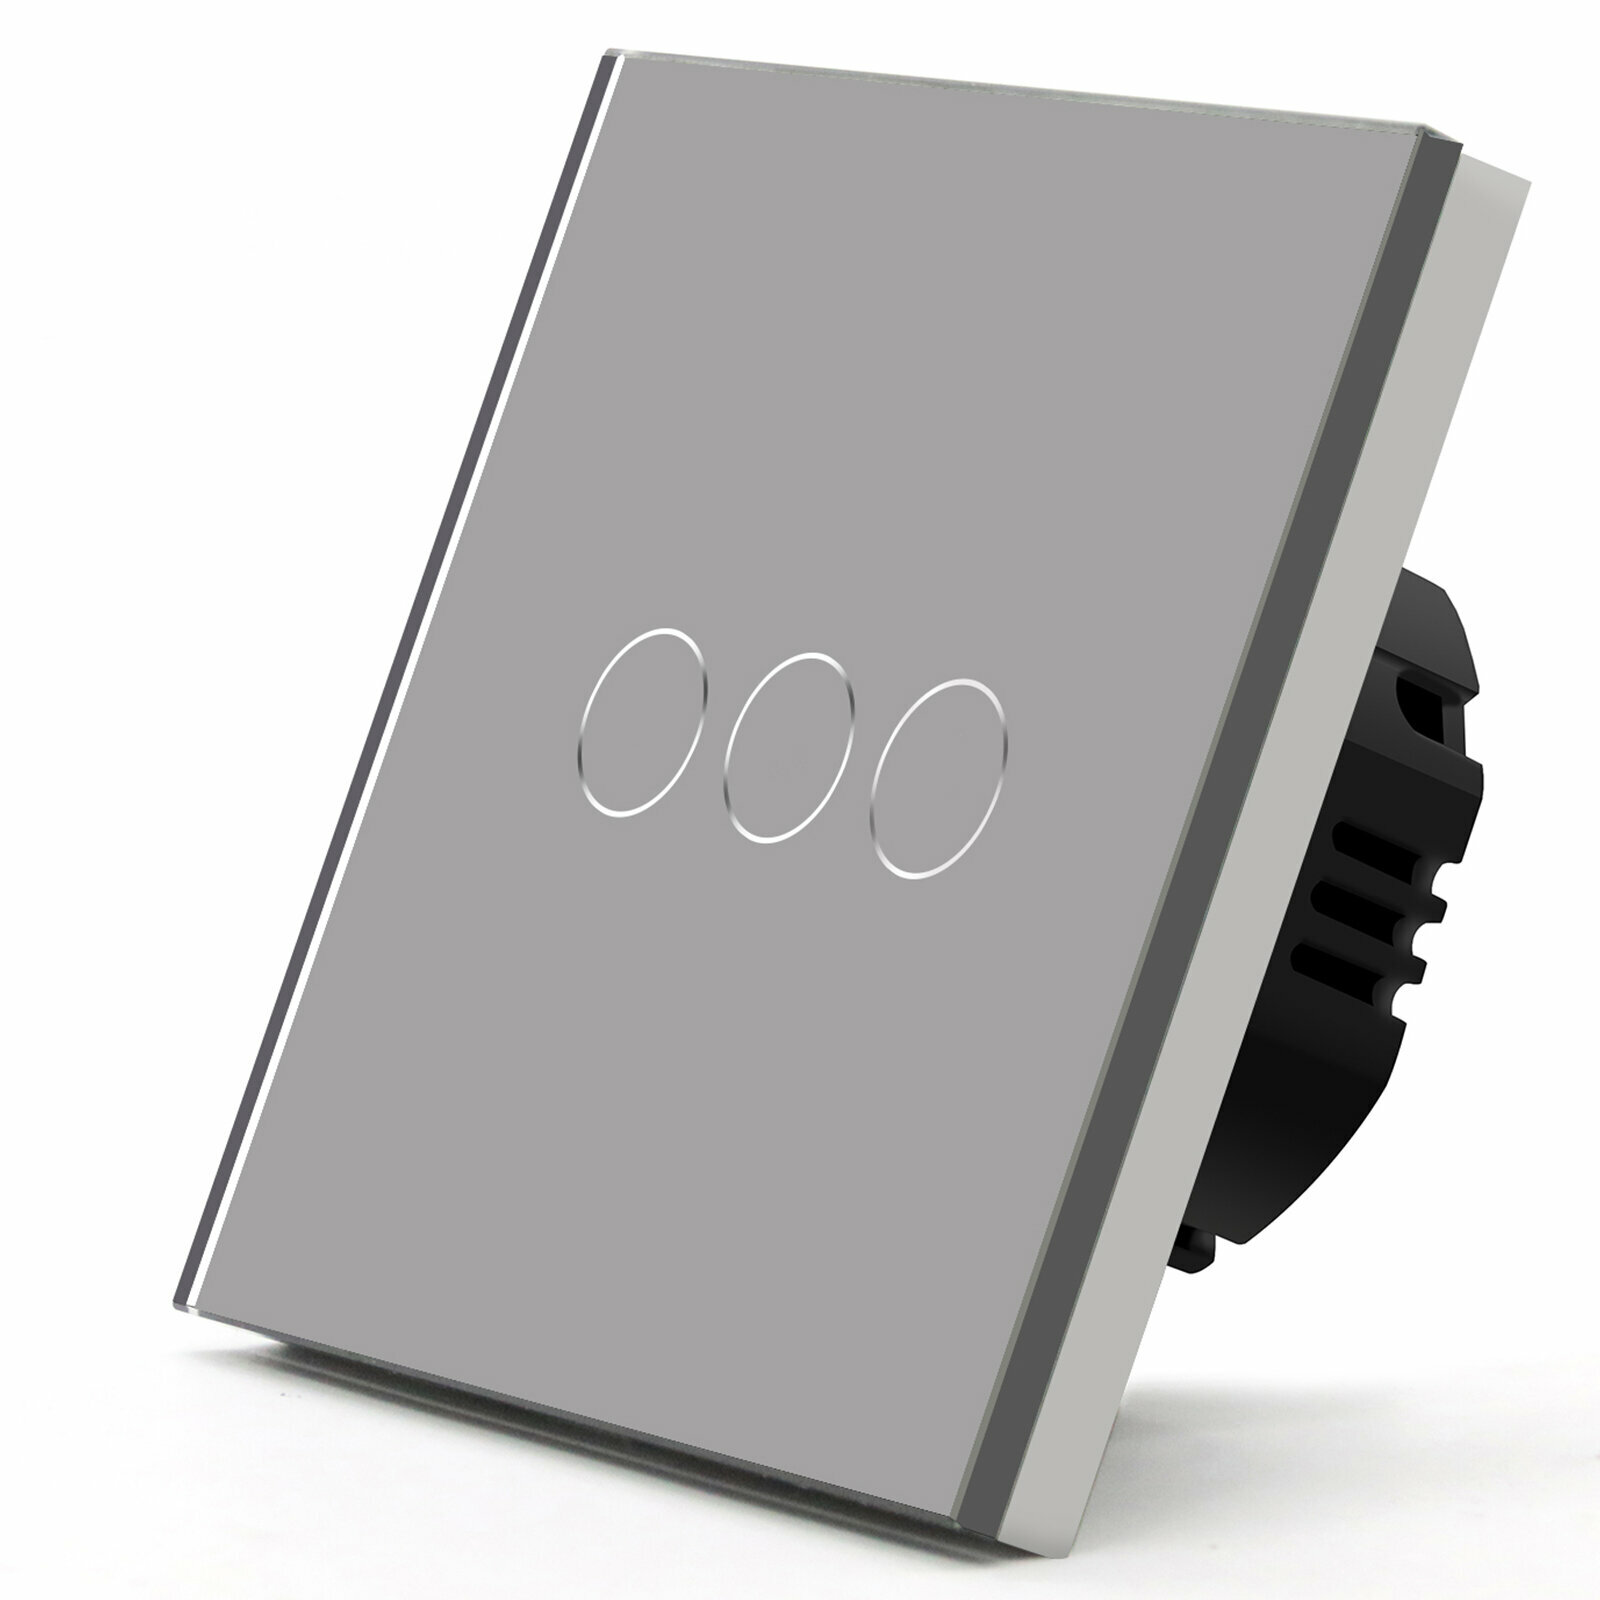 Сенсорный выключатель 3 клавиши 1 пост, (3G) стекло 86х86 мм, цвет серый